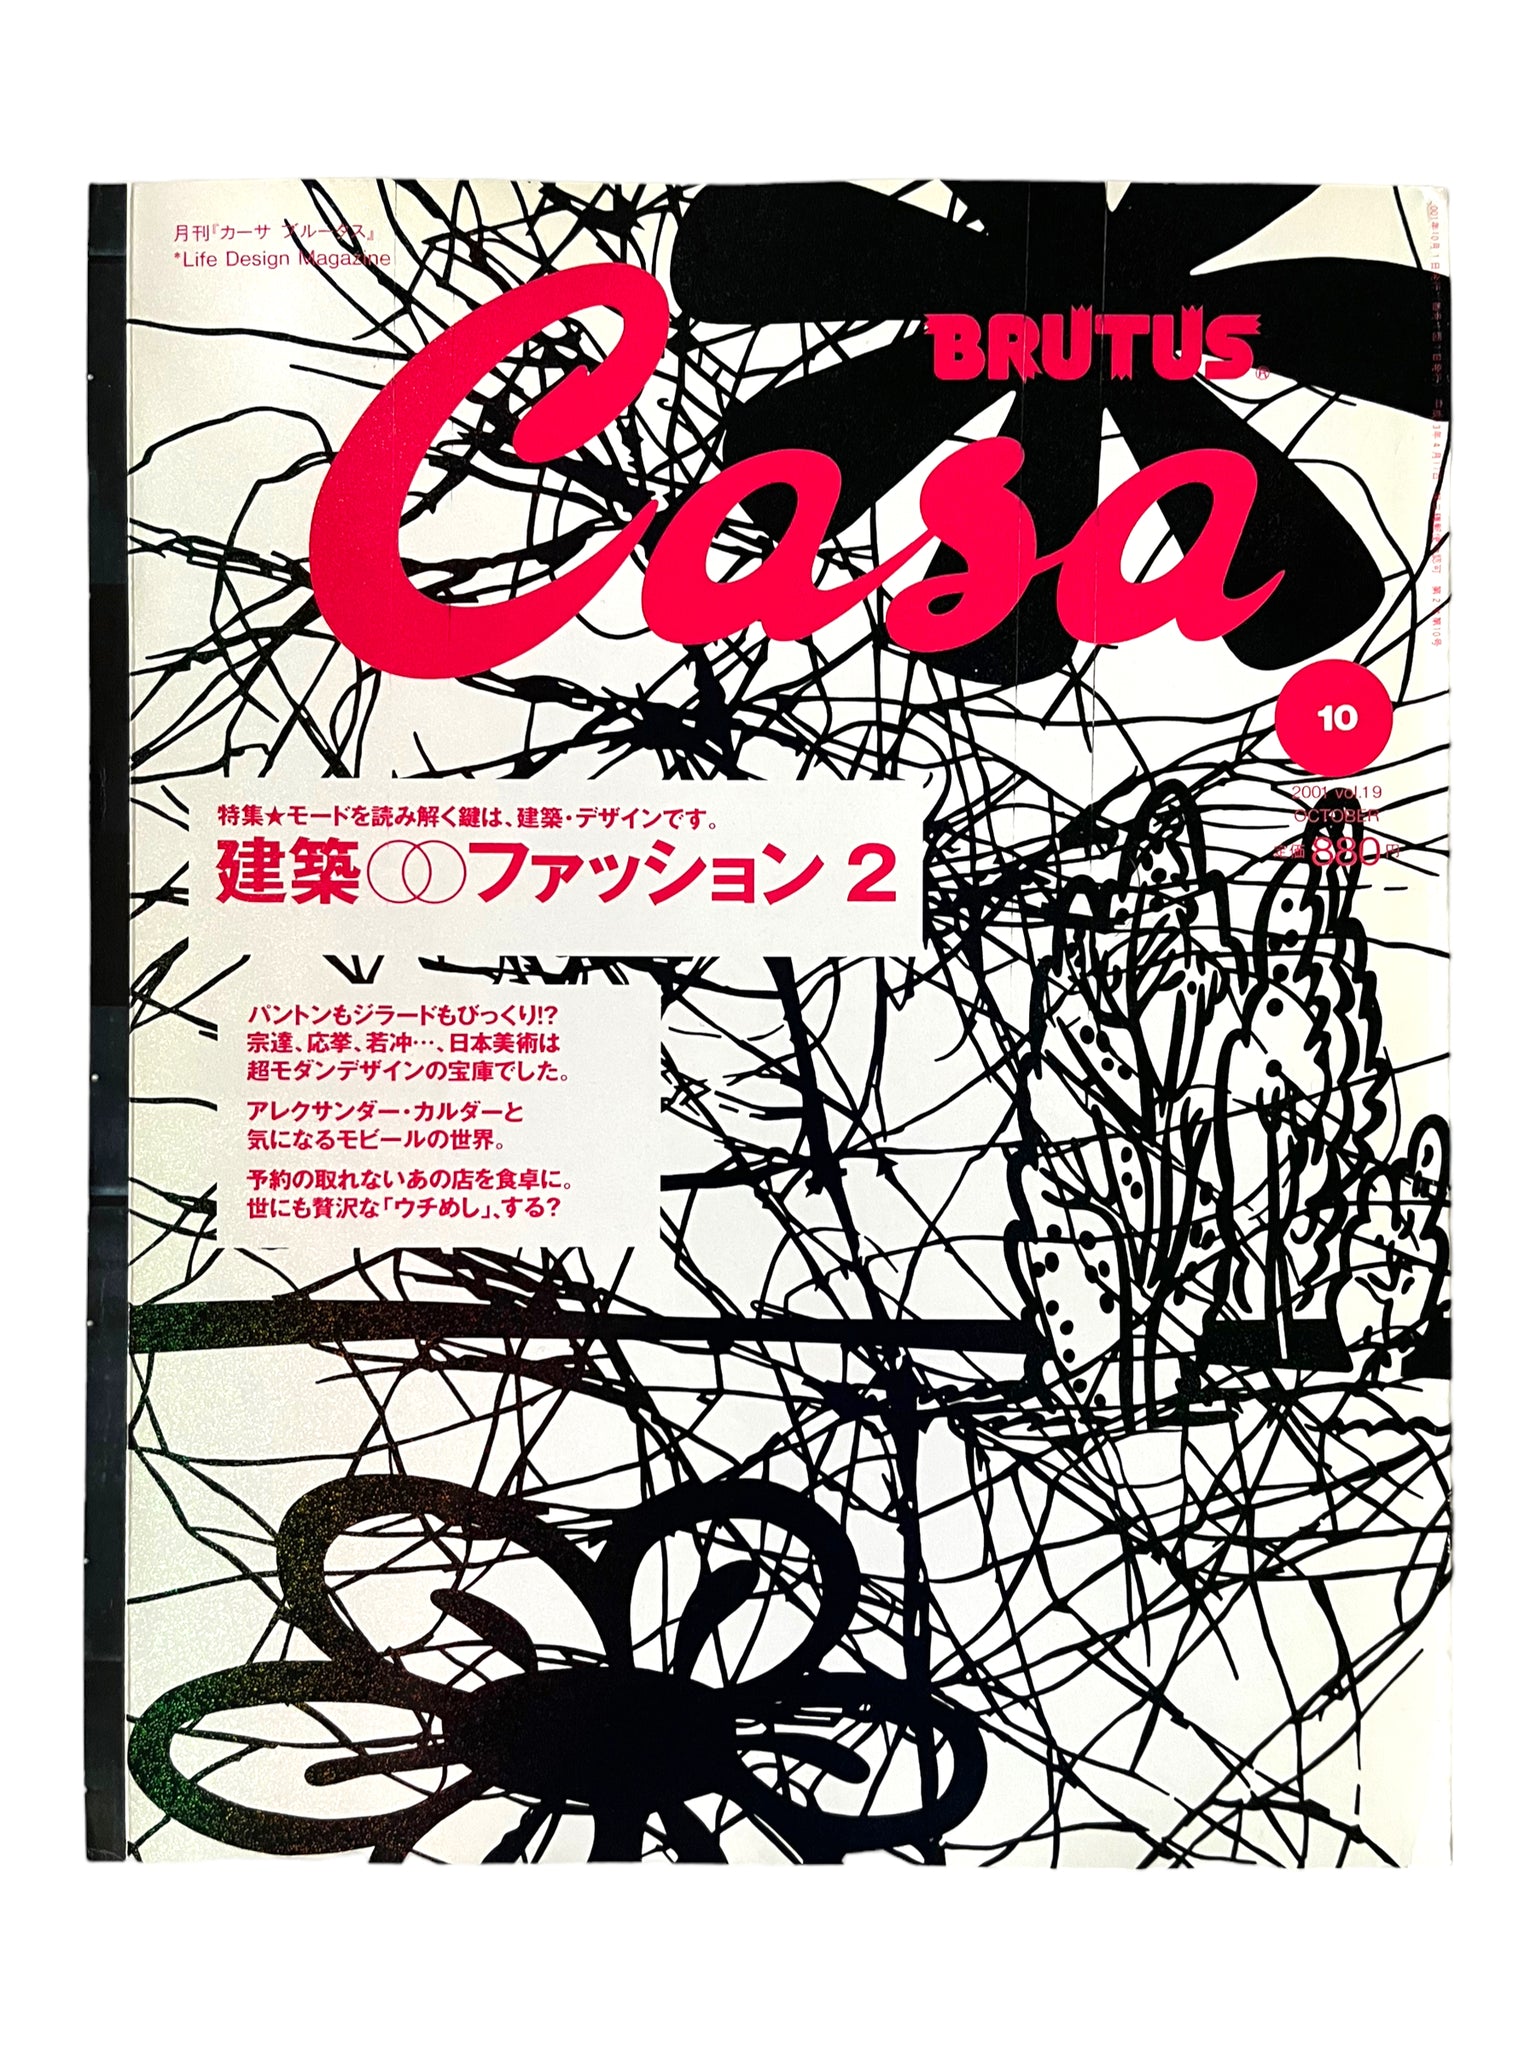 Casa Brutus 19 - Architecture & Fashion 2